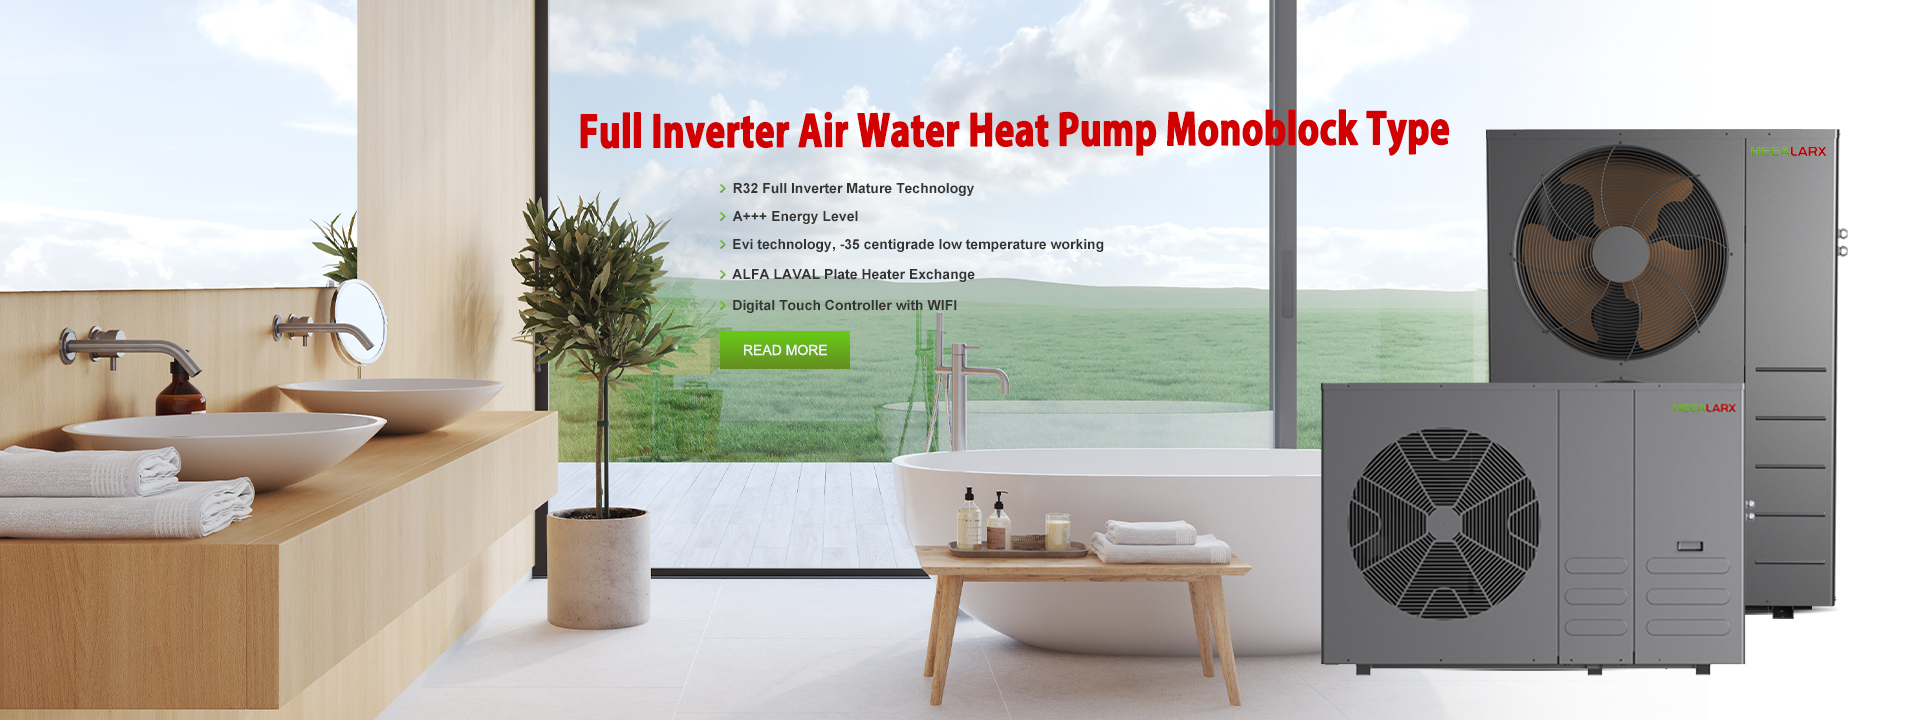 Air Water Heat Pump